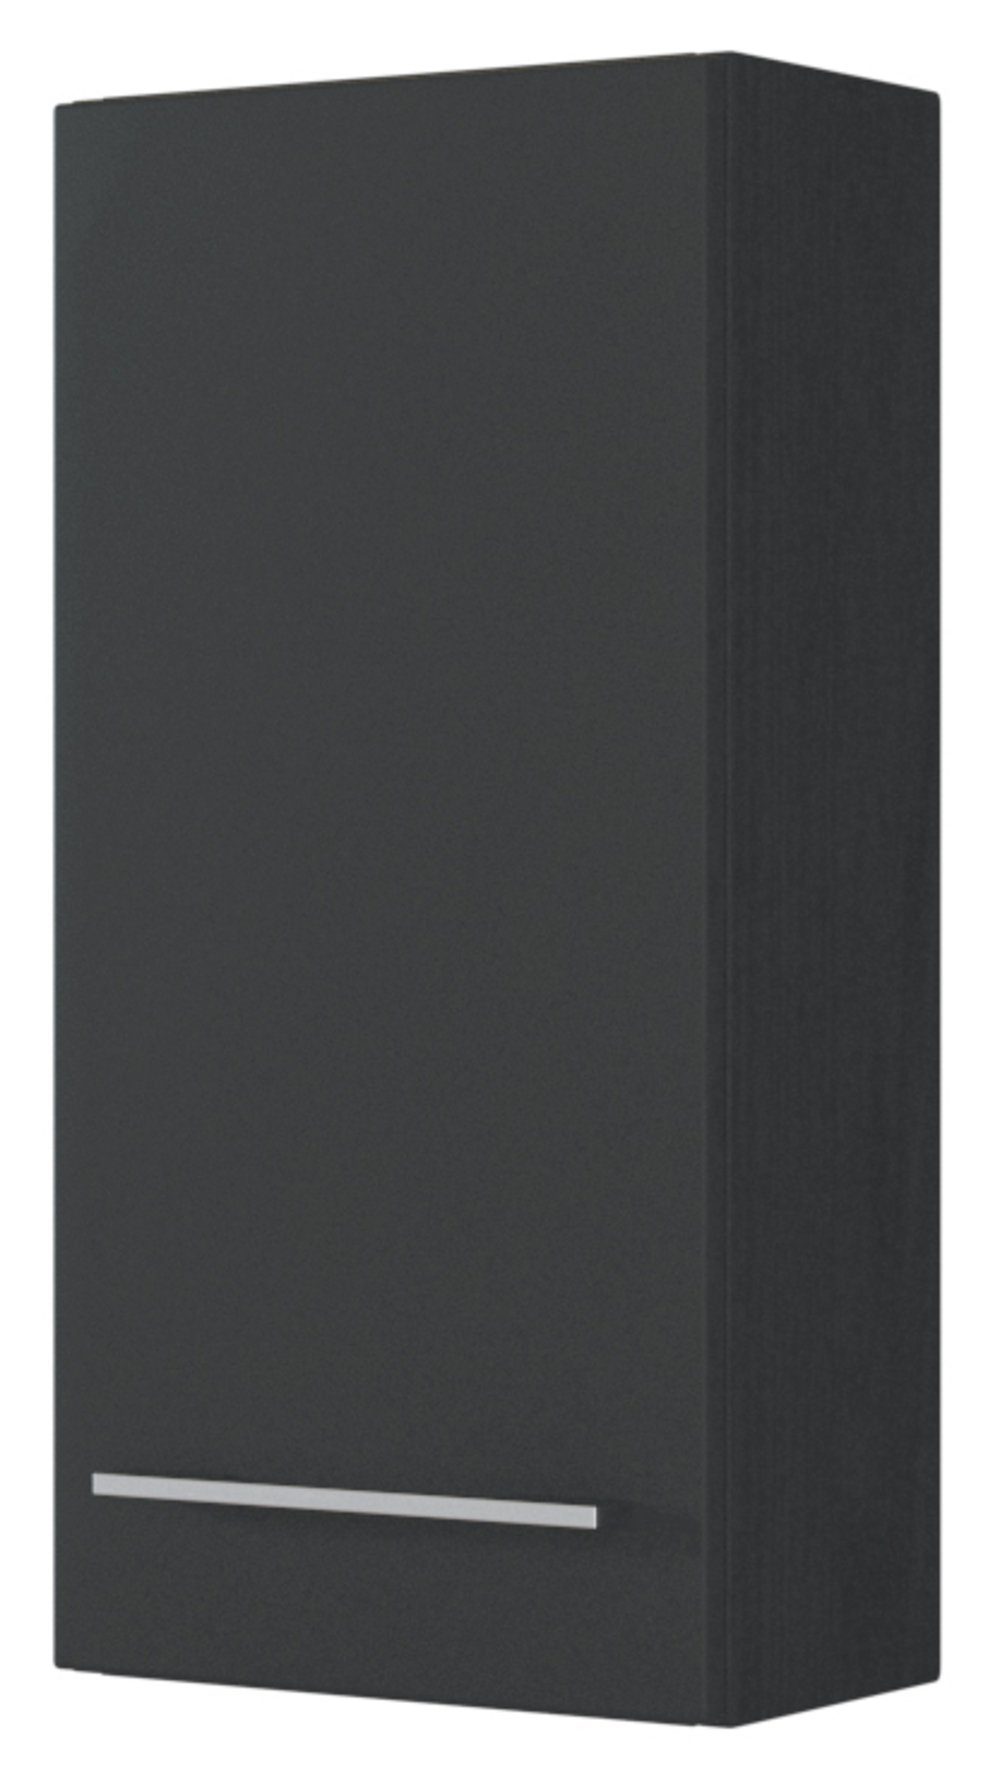 HELD MÖBEL Hängeschrank Davos 30 cm graphit/matt grau Korpus graphit / Front matt grau | graphit | Hängeschränke